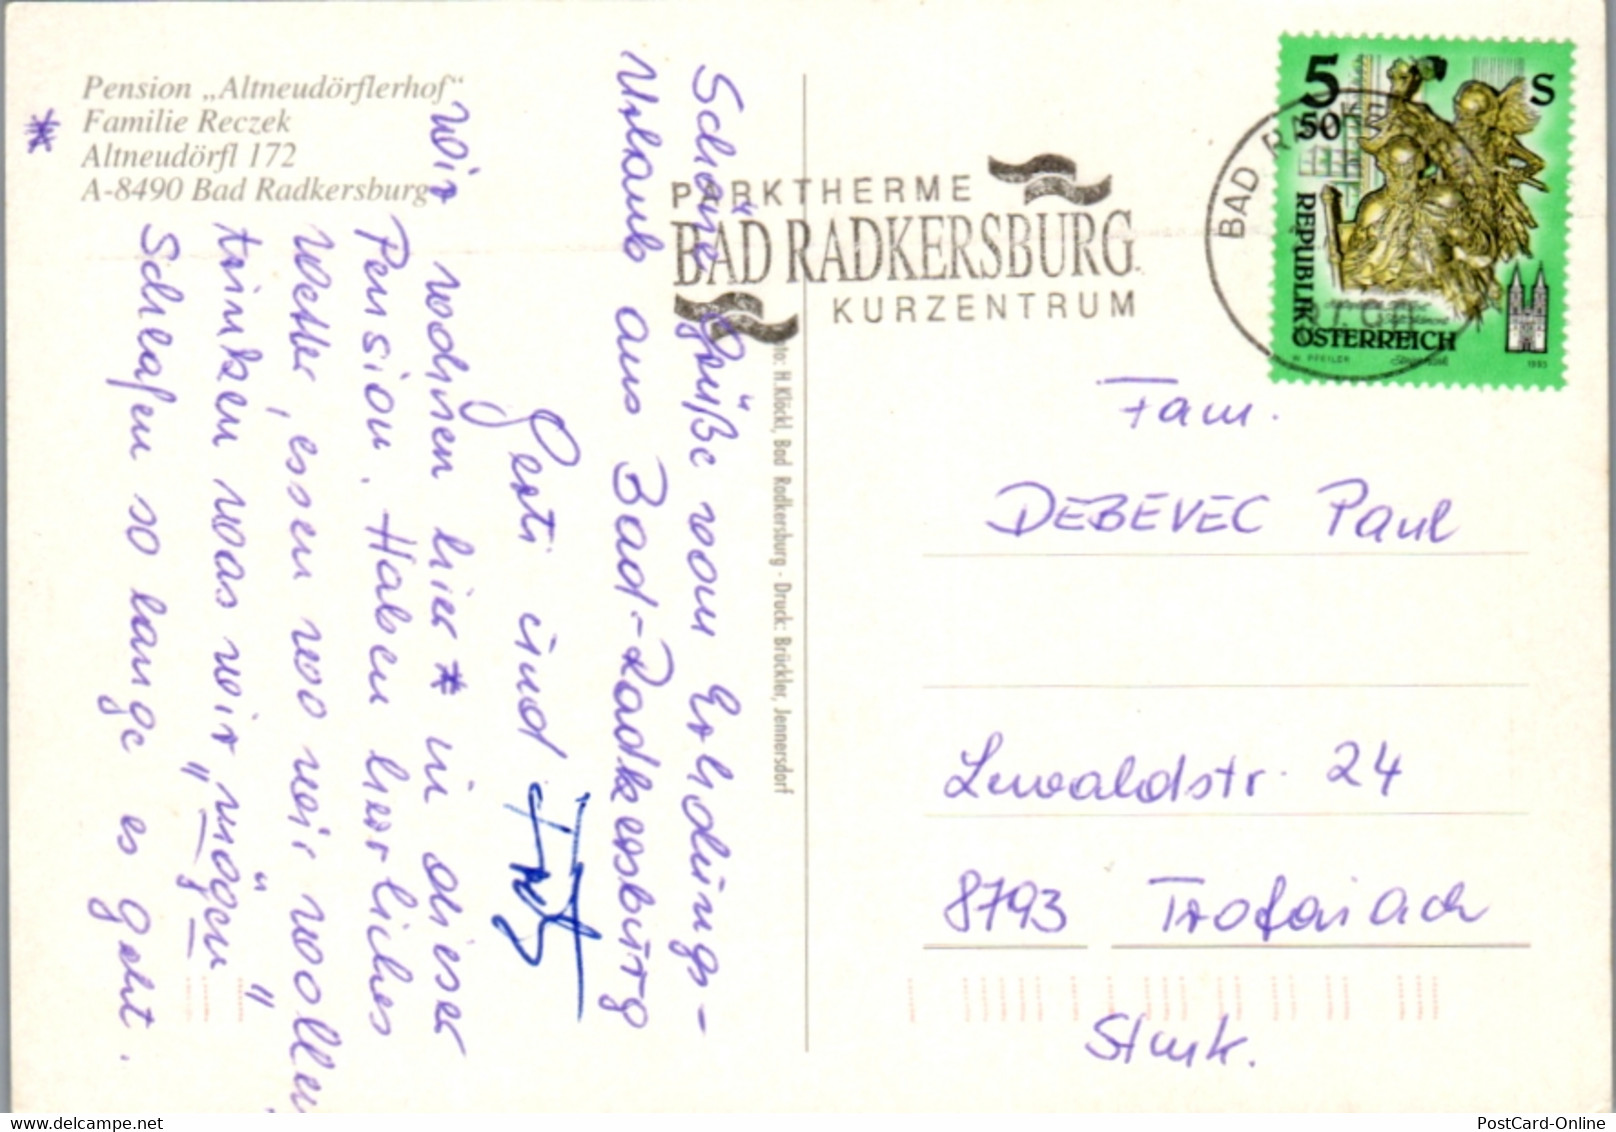 12666 - Steiermark - Bad Radkersburg , Pension Altneudörflerhof , Familien Reczek - Gelaufen - Bad Radkersburg